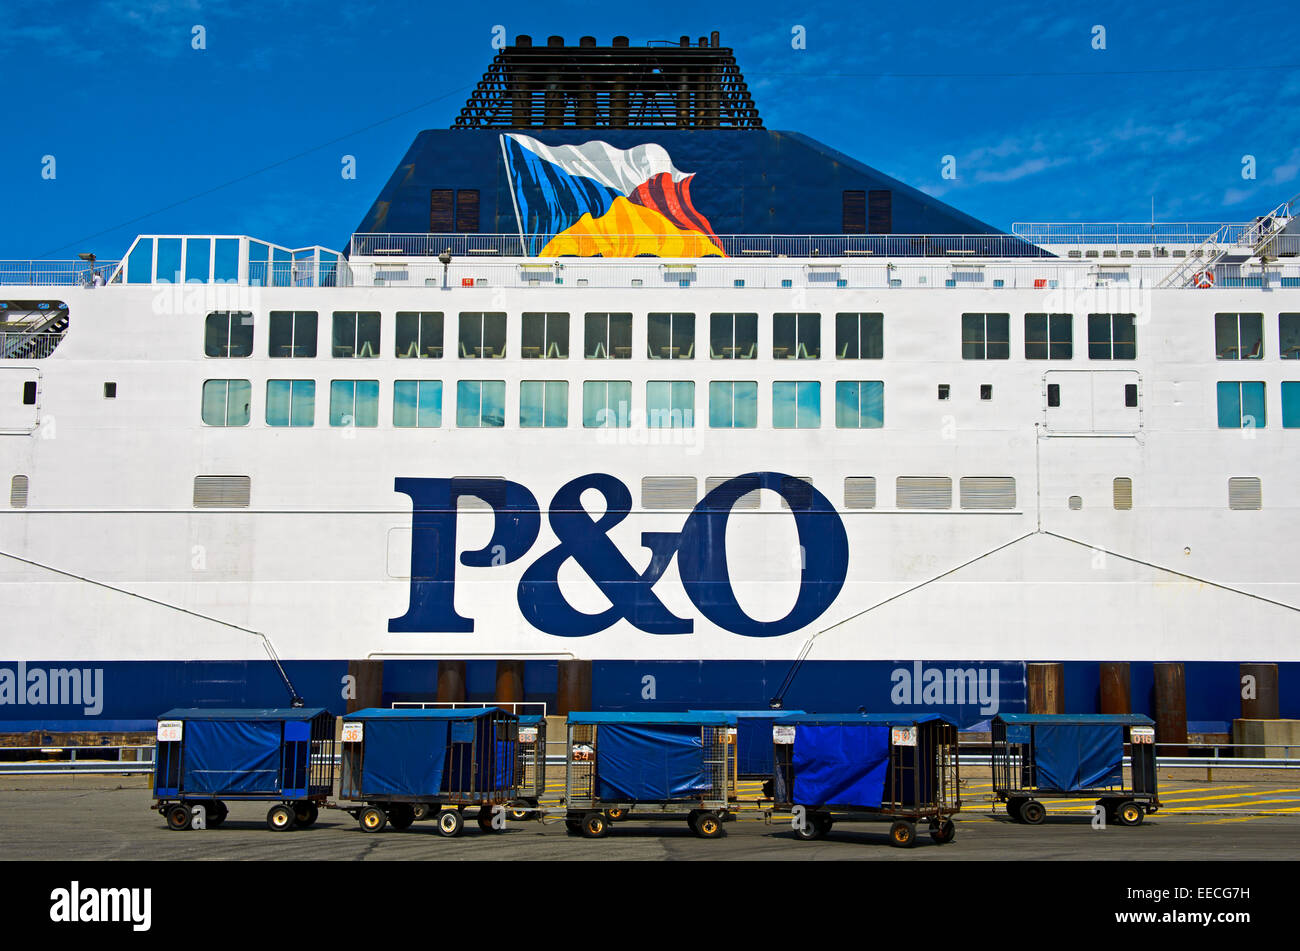 Vue latérale d'un ferry transmanche de la compagnie maritime P&O Ferries dans le port de Calais, France Banque D'Images